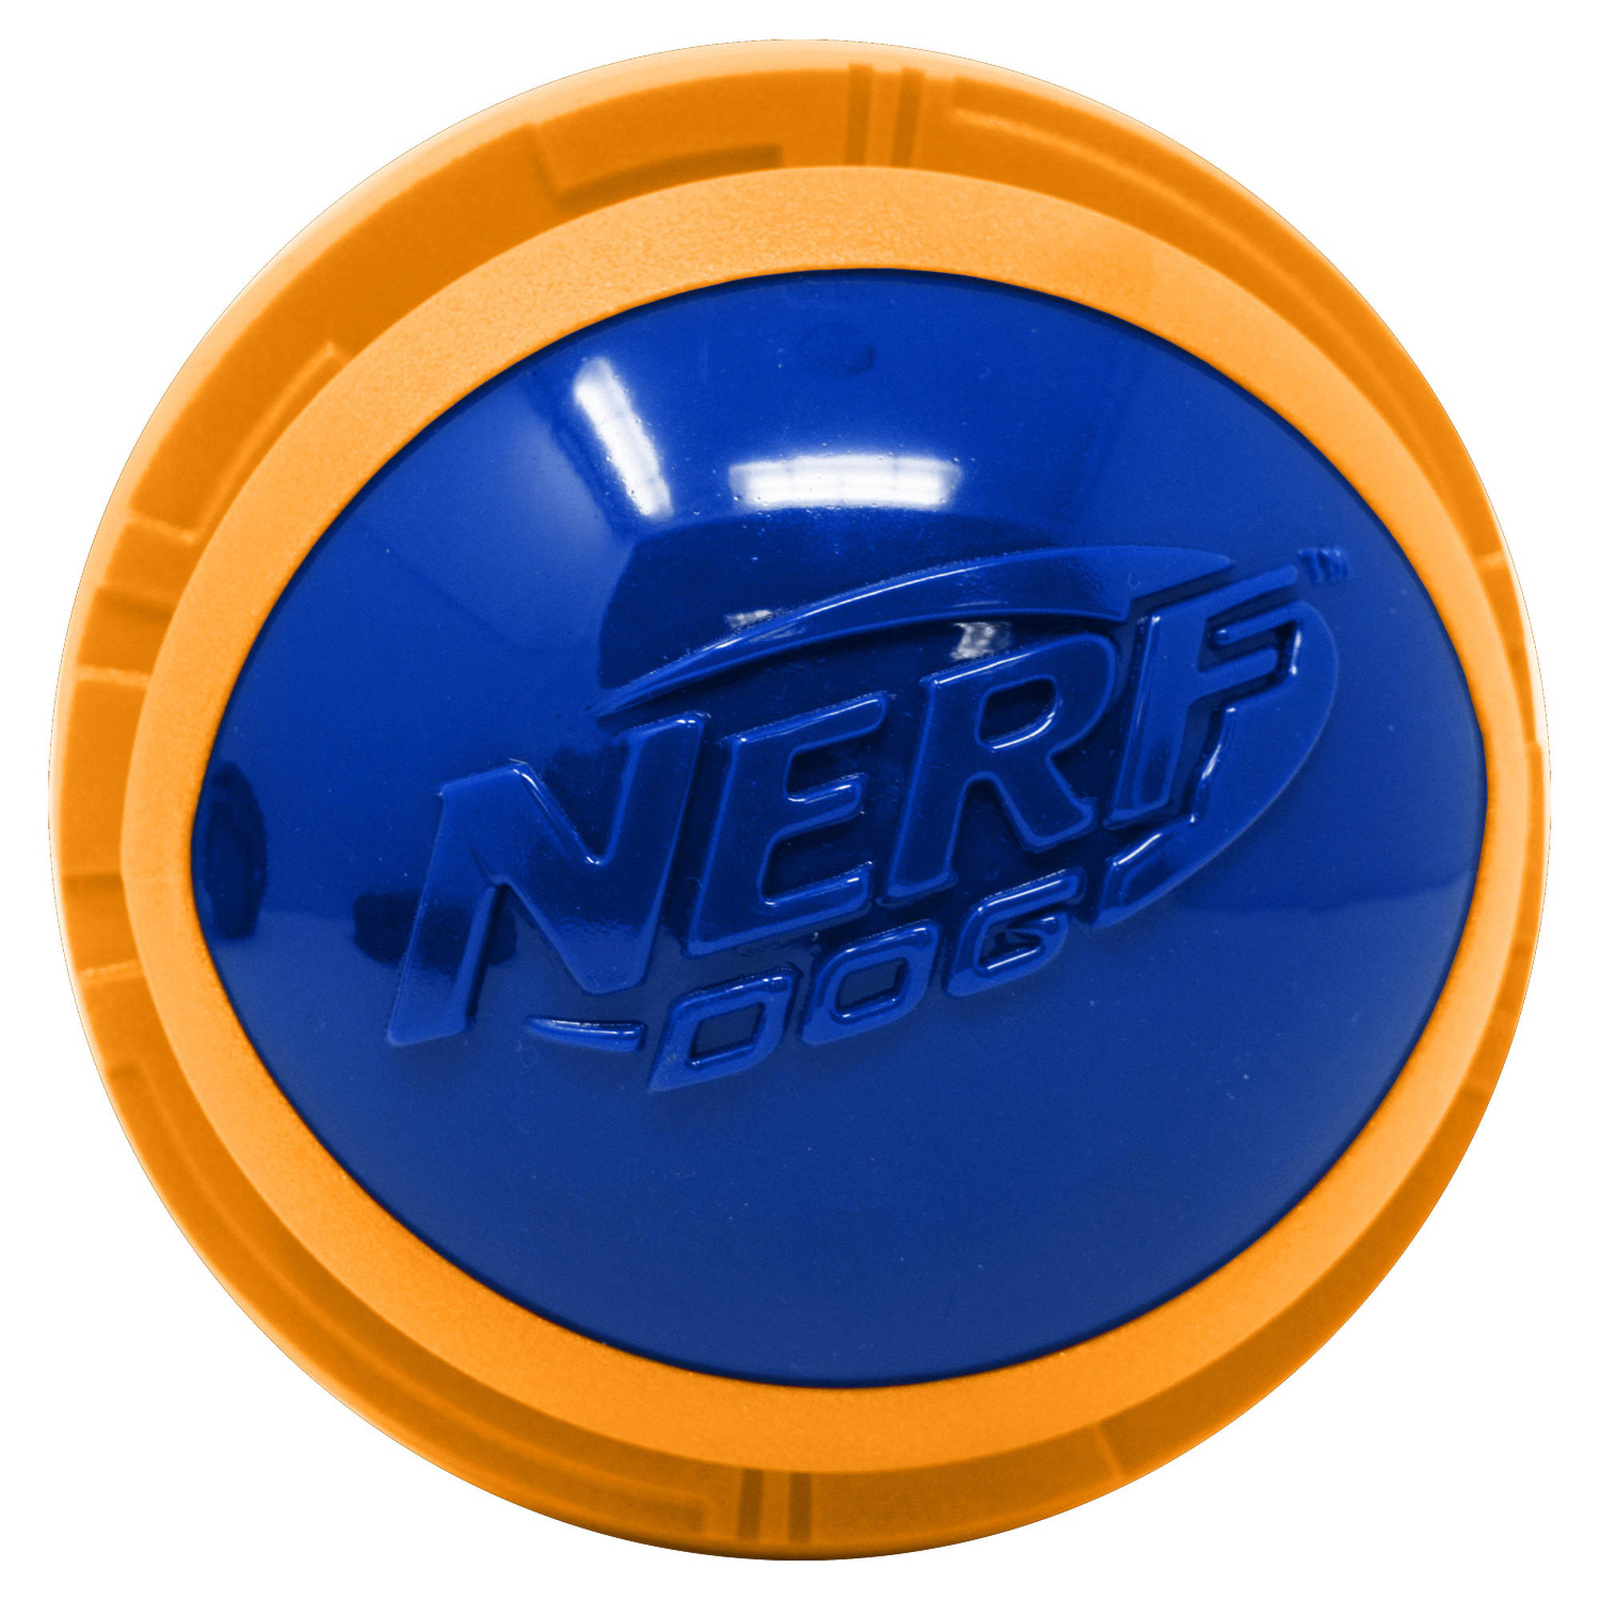 Nerf Nerf мяч из вспененной резины и термопластичной резины, 10 см (серия Мегатон), (синий/оранжевый) (380 г) nerf мегатон игрушка для собак мяч для регби из нейлона и вспененной резины оранжевый синий 18 см